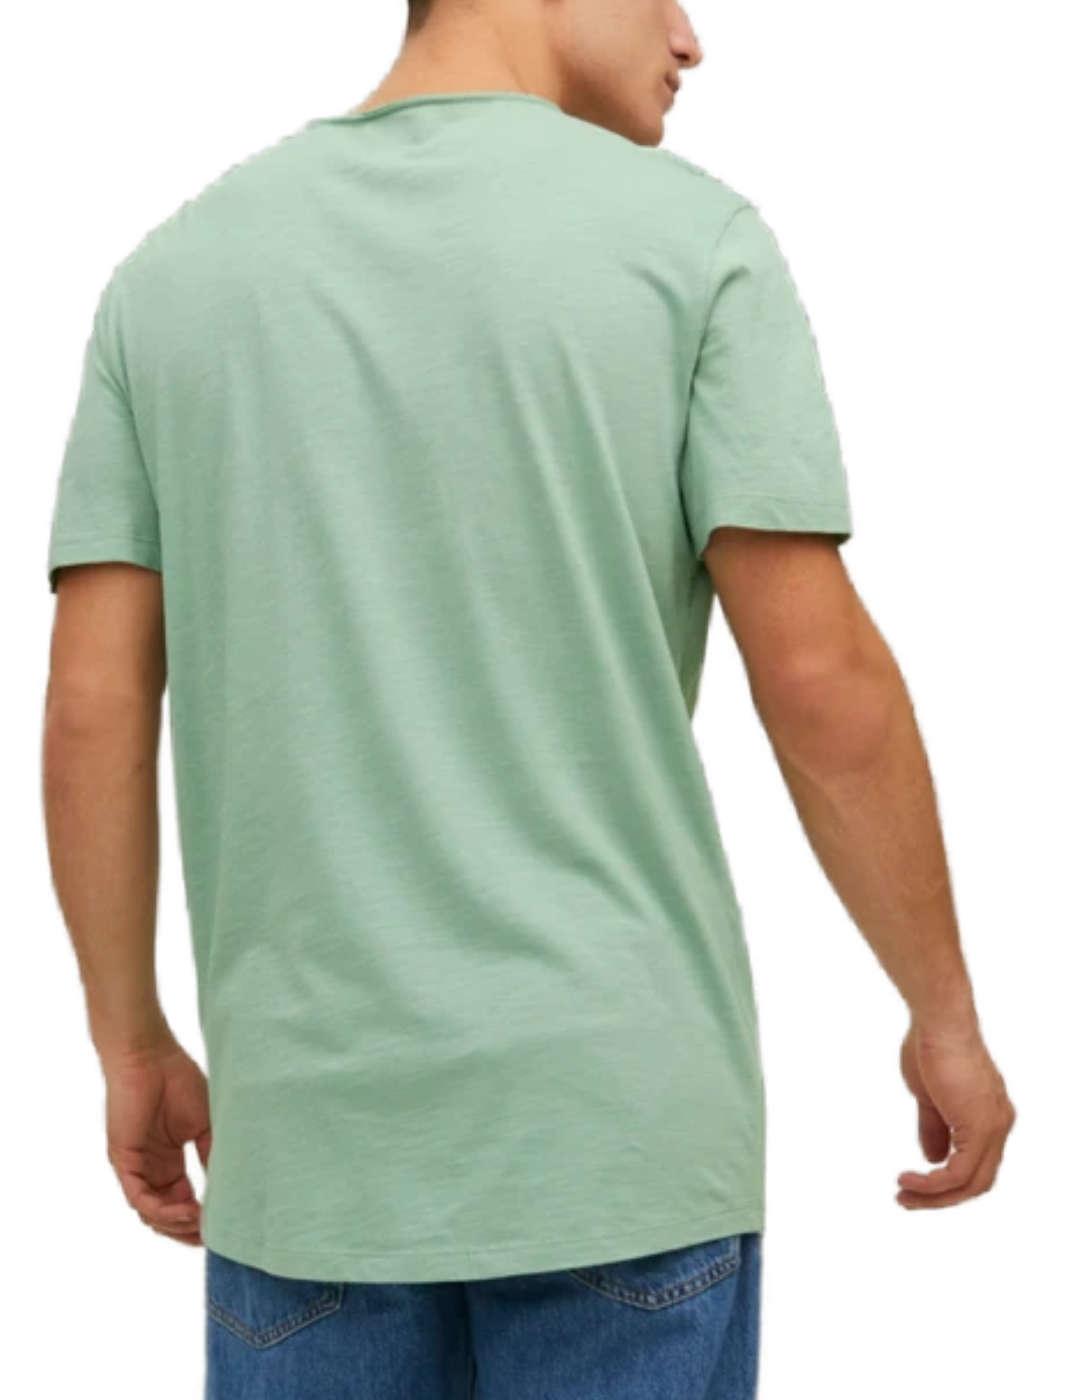 Camiseta Jack&Jones Basher verde agua manga corta de hombre